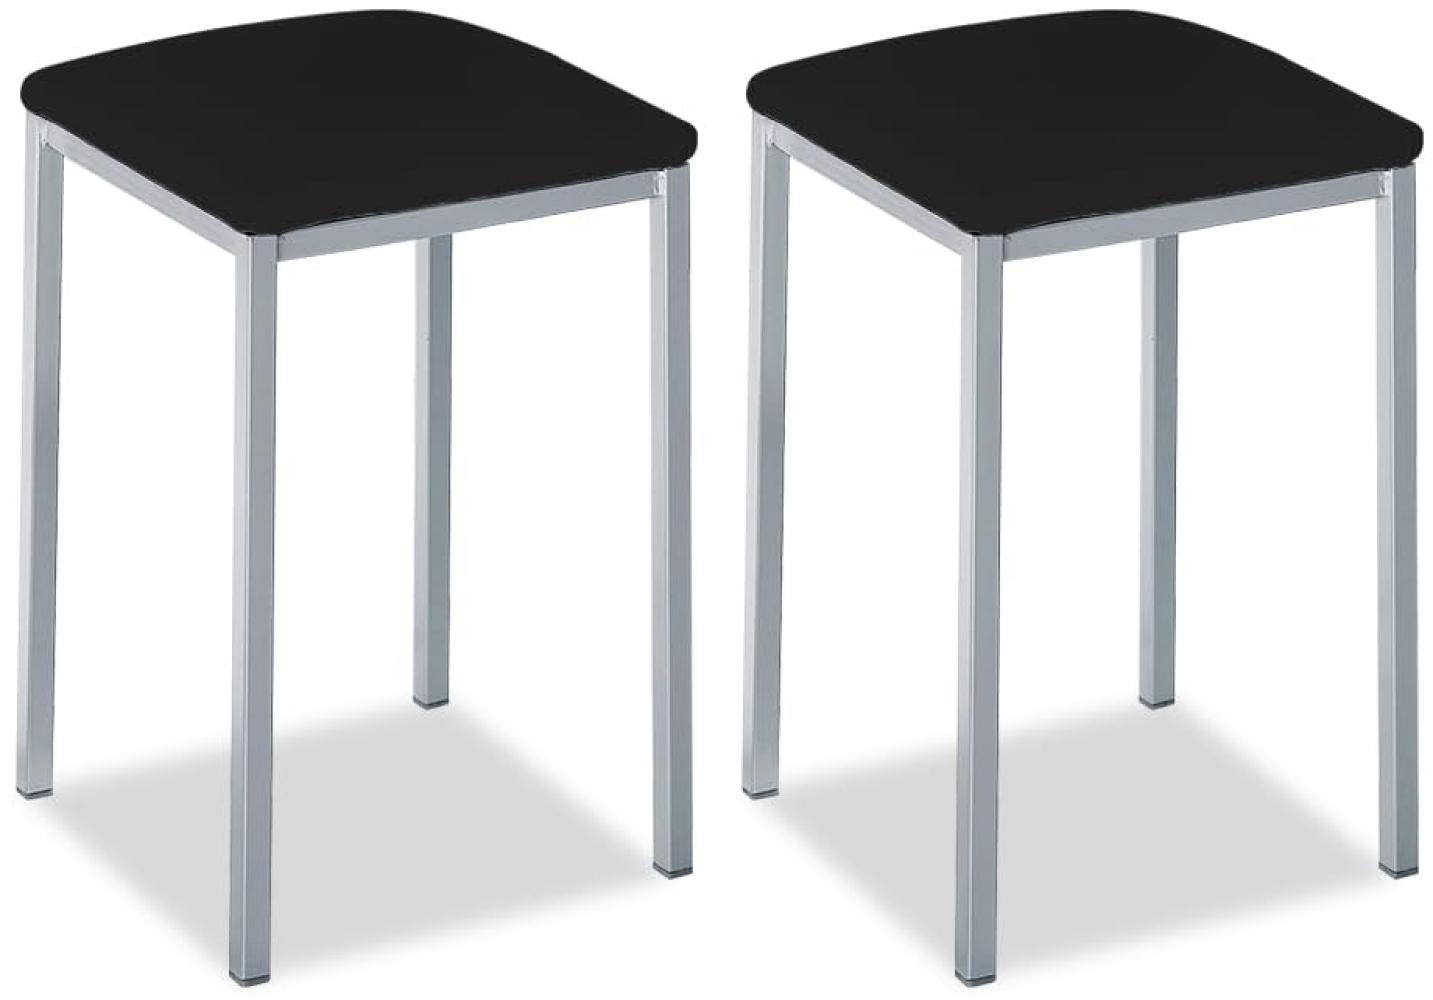 ASTIMESA - Gepolsterter Küchenhocker - Solide und Feste Struktur - Gestell Farbe Aluminium und Sitzfläche aus Kunstleder - Sitzfarbe: Schwarz, Lieferumfang: 2 Stück, Maße: 35 x 35 x 45 cm Bild 1